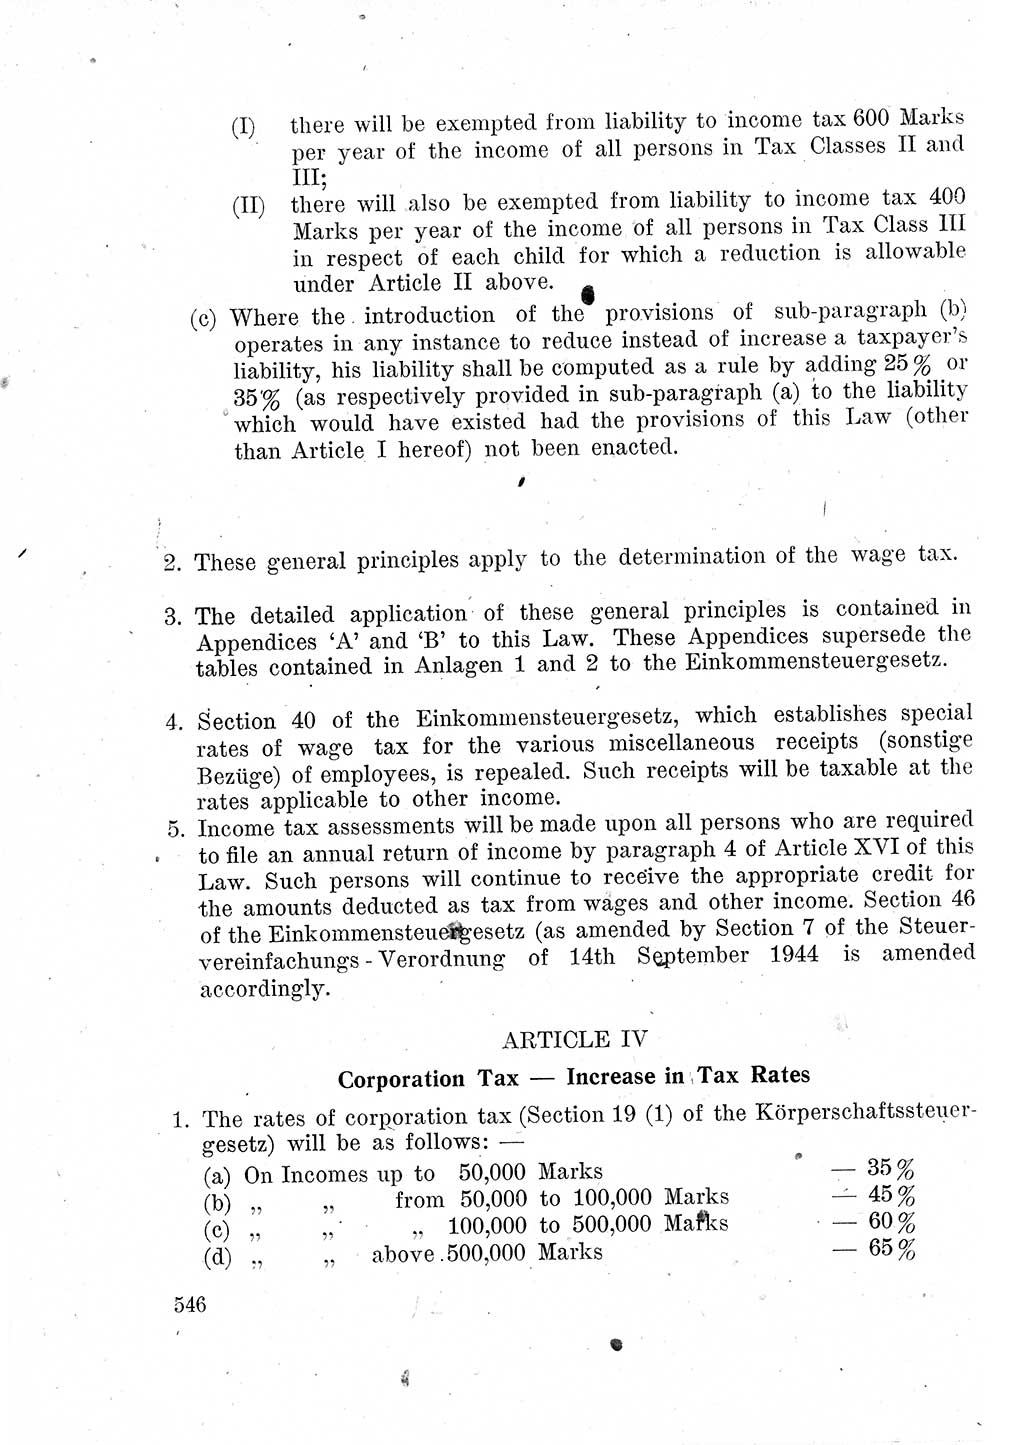 Das Recht der Besatzungsmacht (Deutschland), Proklamationen, Deklerationen, Verordnungen, Gesetze und Bekanntmachungen 1947, Seite 546 (R. Bes. Dtl. 1947, S. 546)